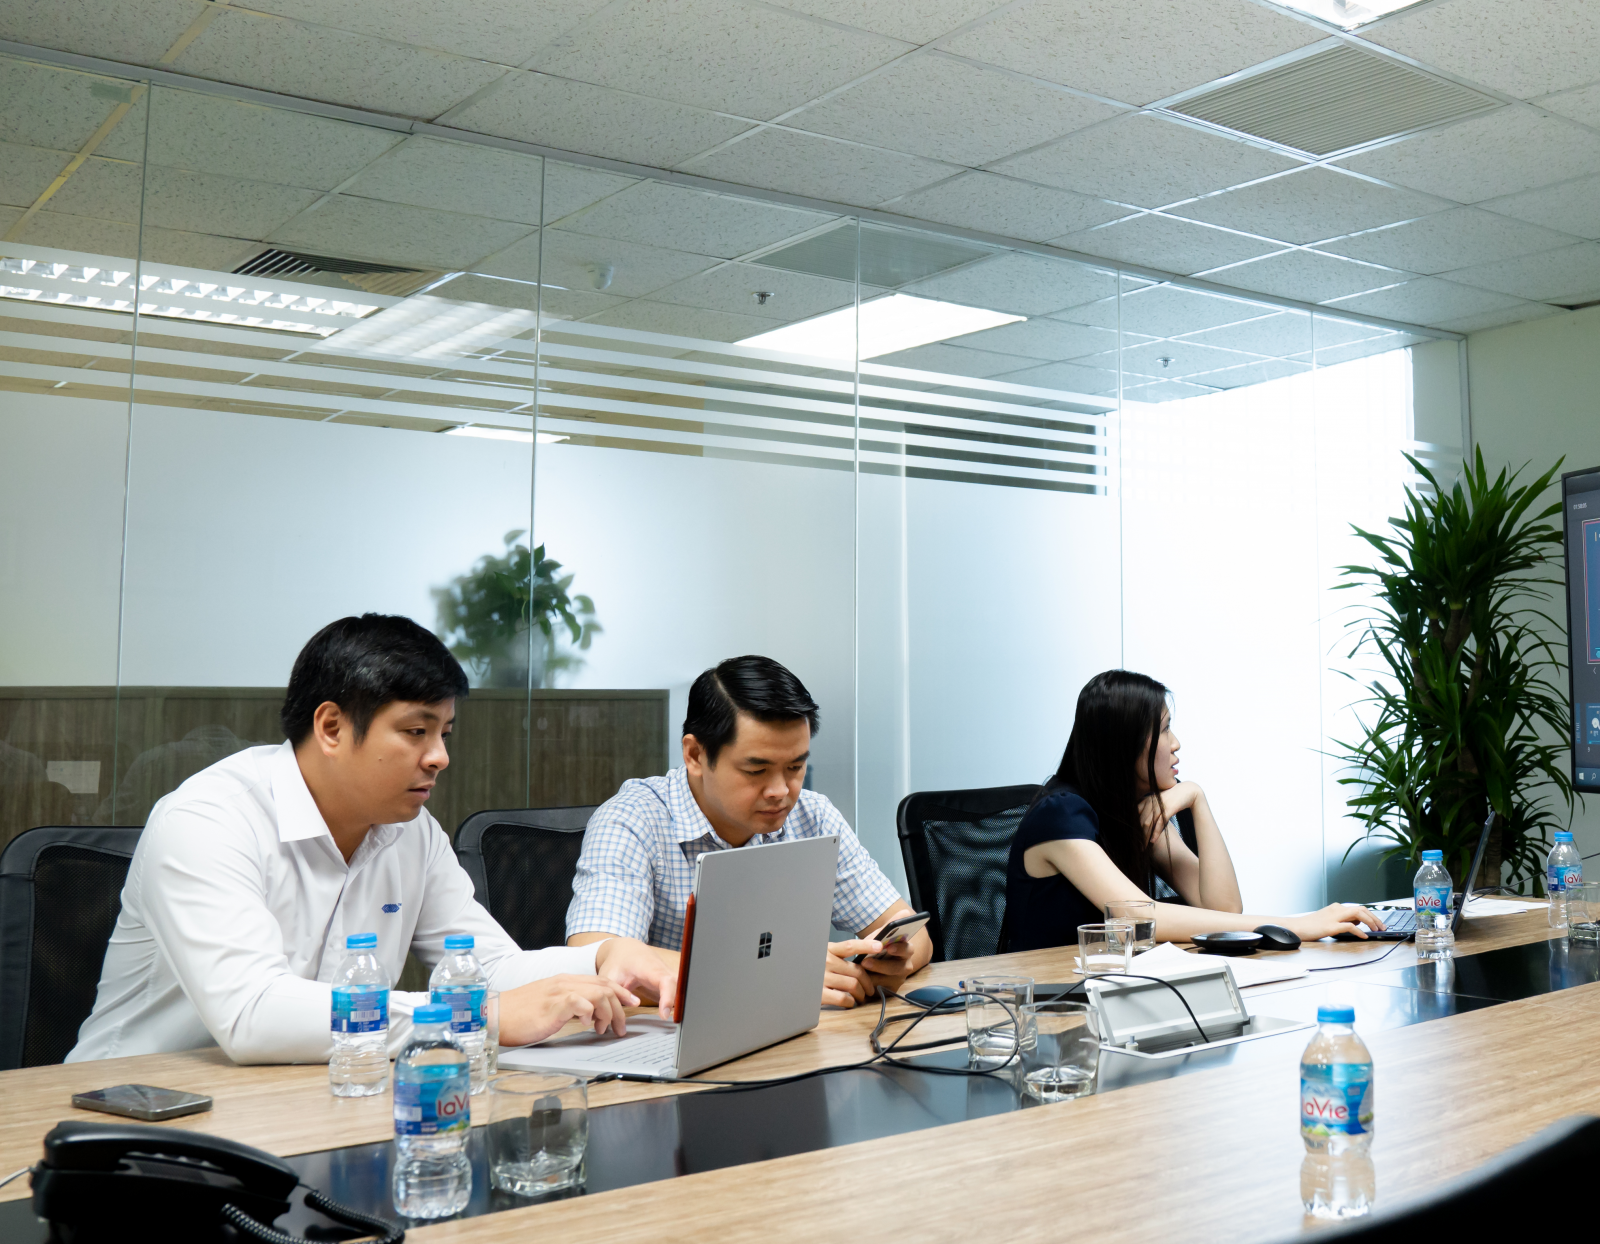 Sở Giao dịch Hàng hóa Việt Nam (MXV) tổ chức buổi Tập huấn Thành viên “Giao dịch các sản phẩm mới và Quản lý rủi ro đối với Khách hàng nắm giữ vị thế lớn”